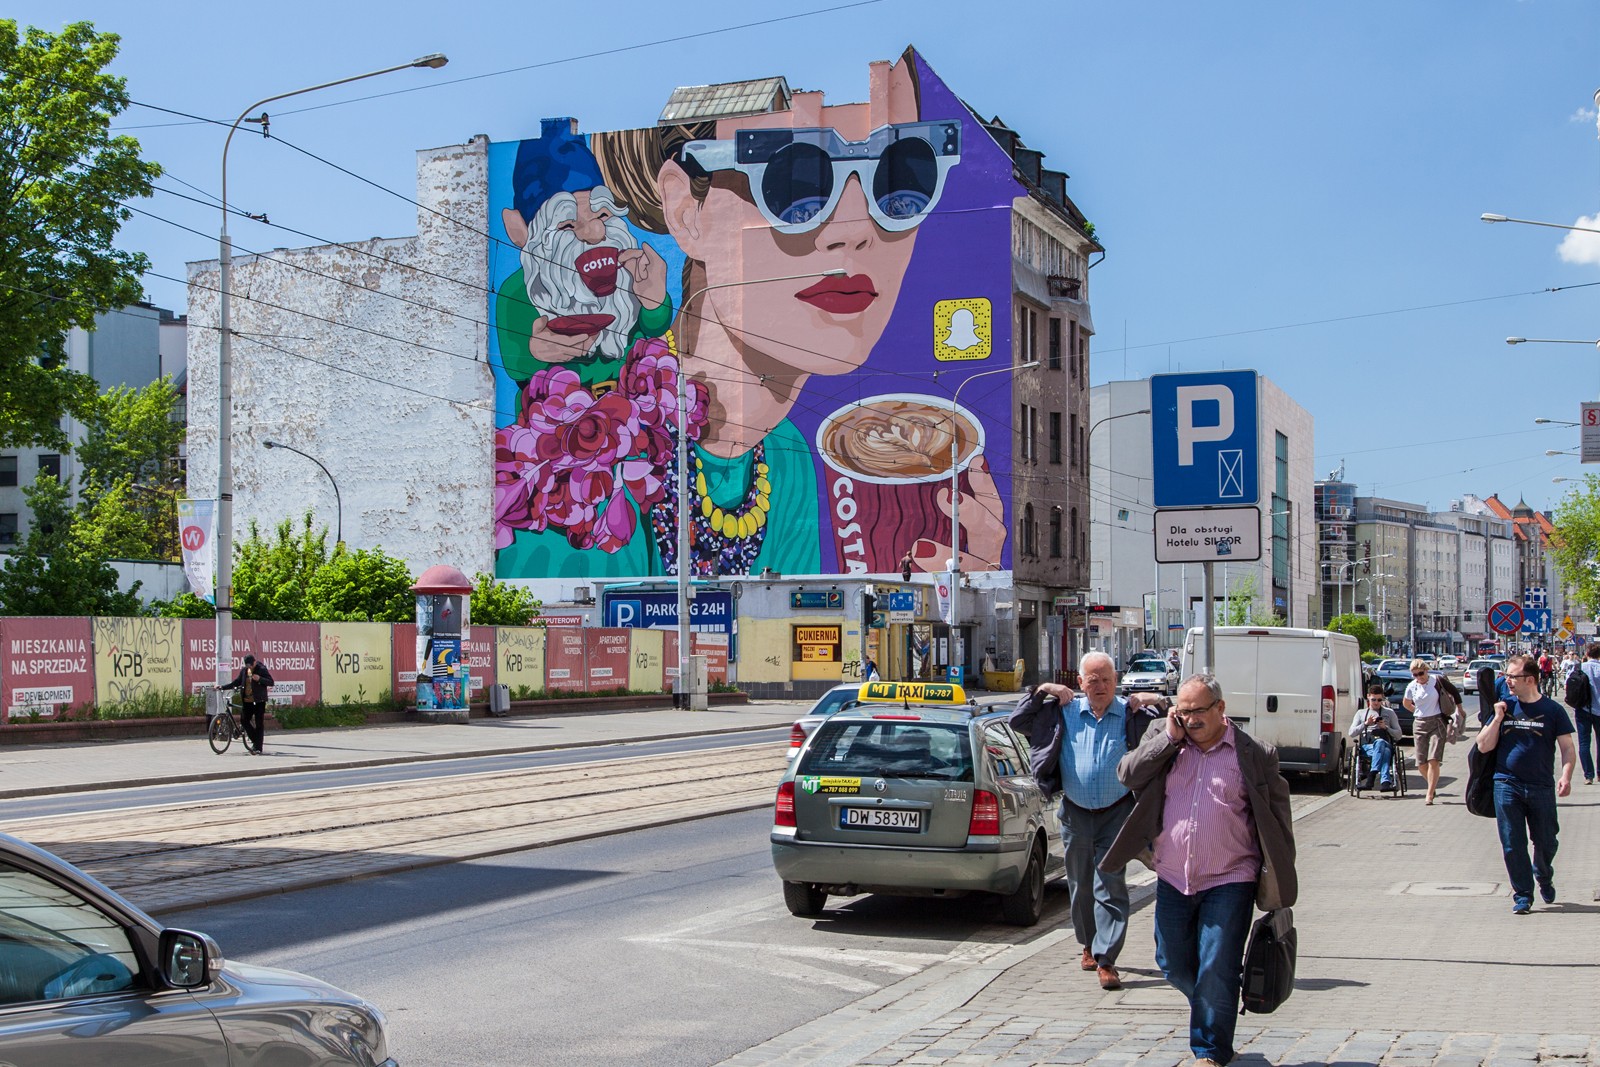 Wrocławski mural dla marki Costa Coffee z pijącym kawę krasnalem projektu Olki Osadzińskiej na ulicy Piłsudskiego 70 | kampania murali dla Costa Coffee - Polscy ilustratorzy | Portfolio